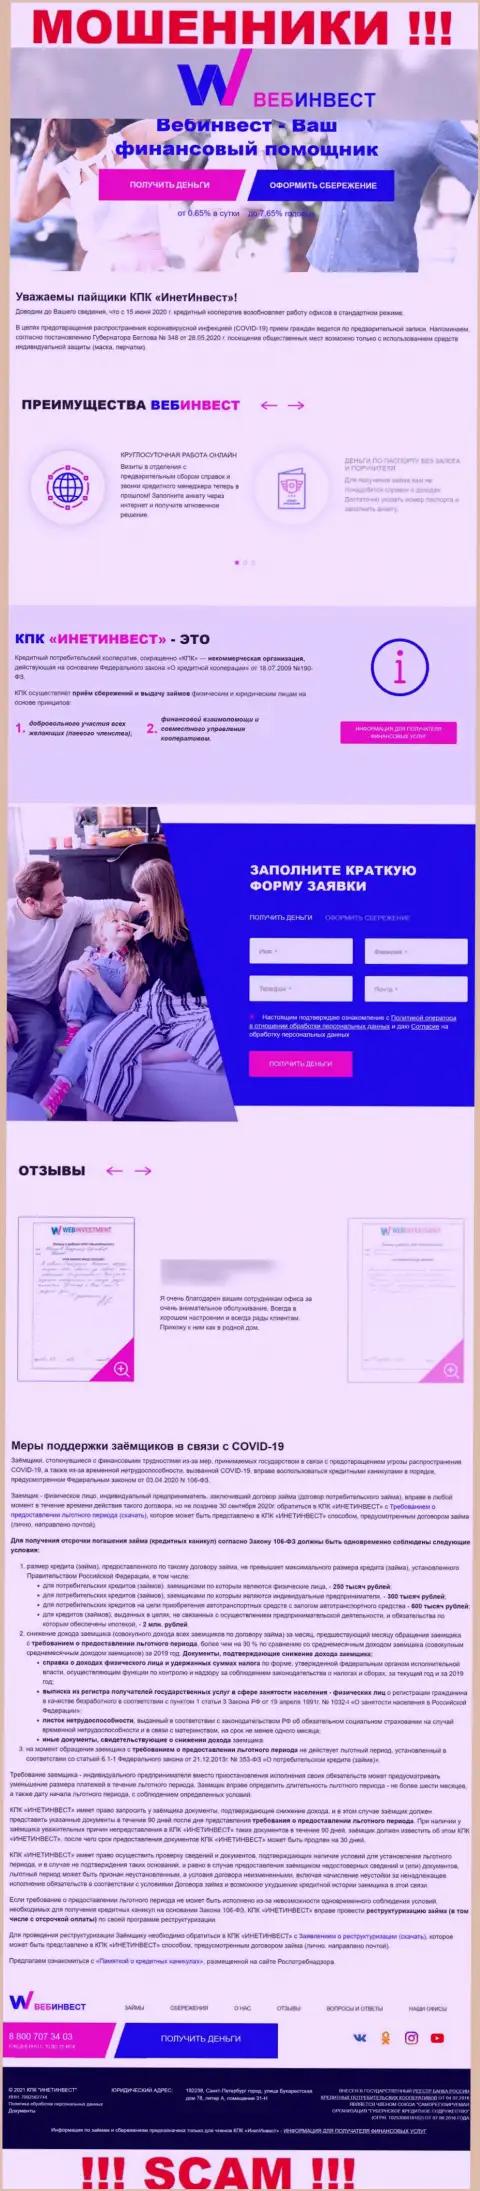 WebInvestment Ru - это официальный онлайн-сервис мошенников КПК ИнетИнвест